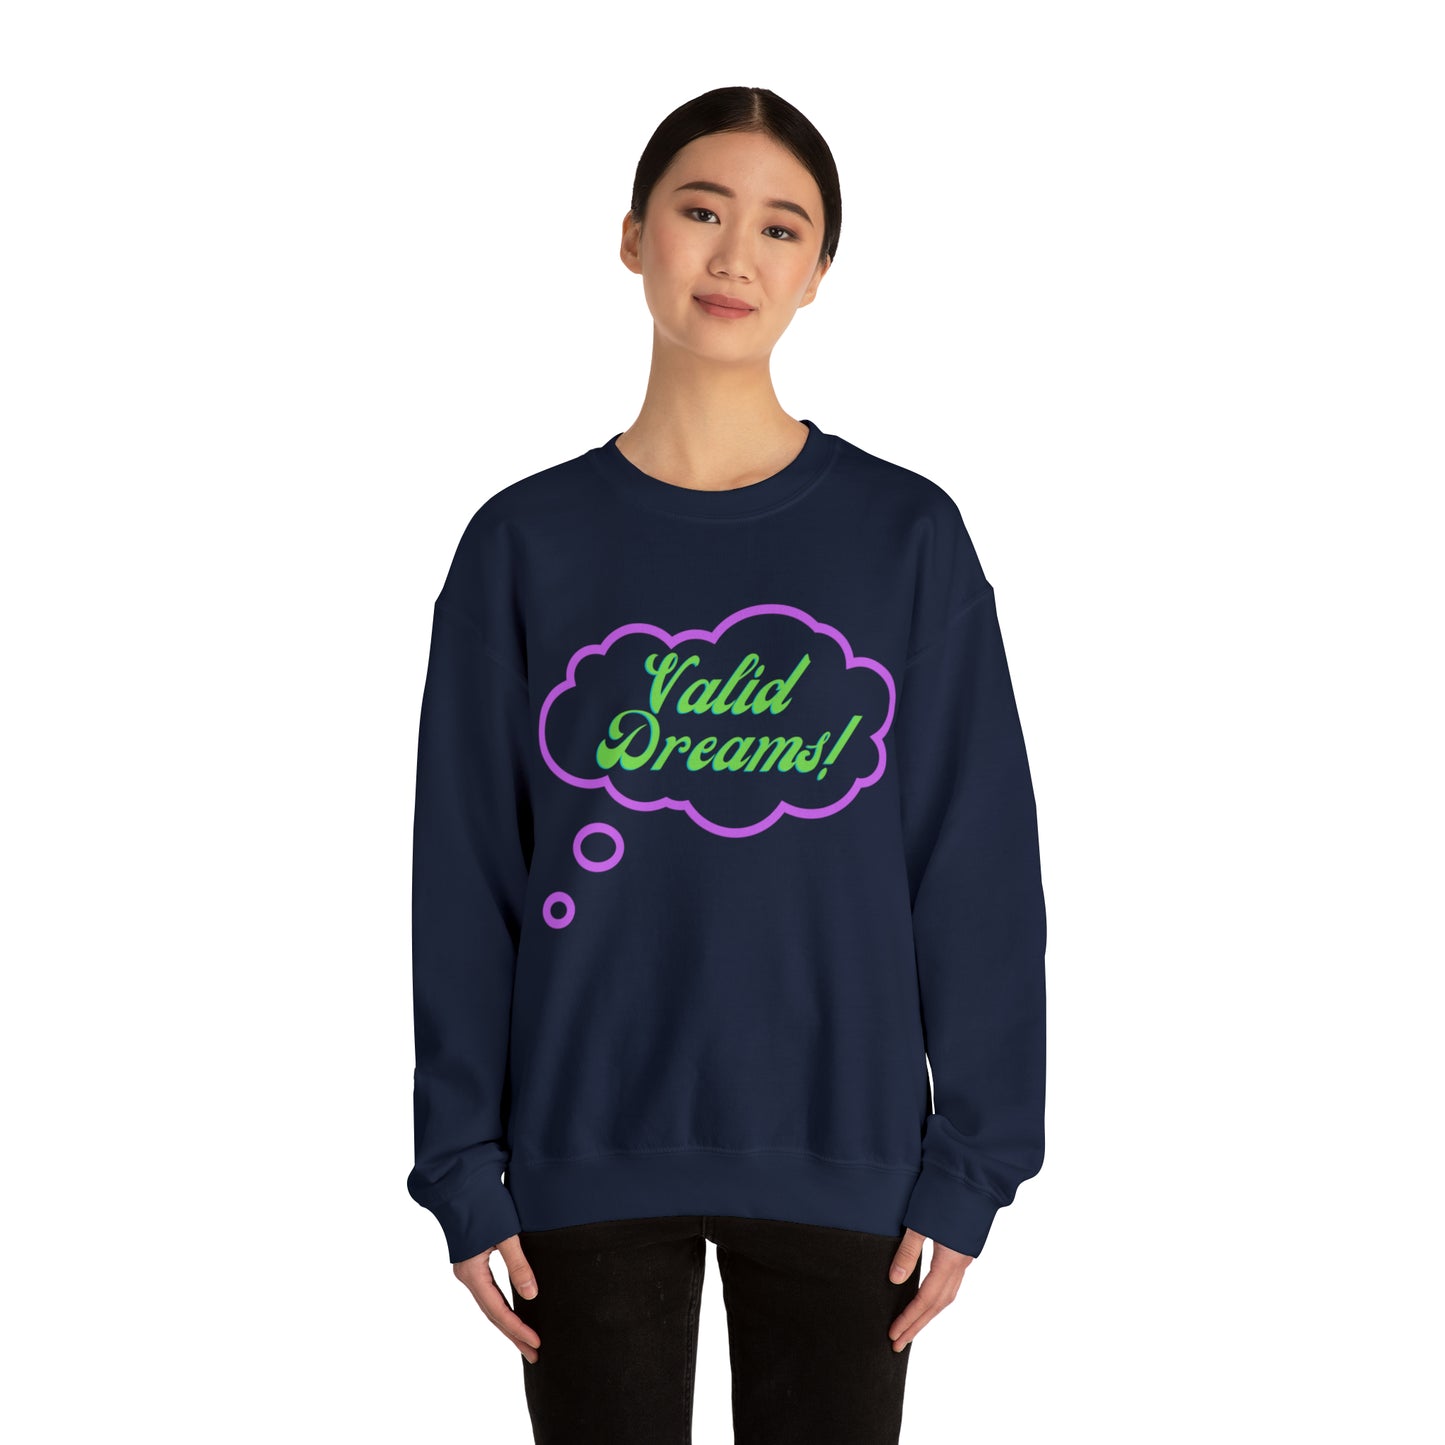 Valid Dreams Crewneck Sweatshirt Gift